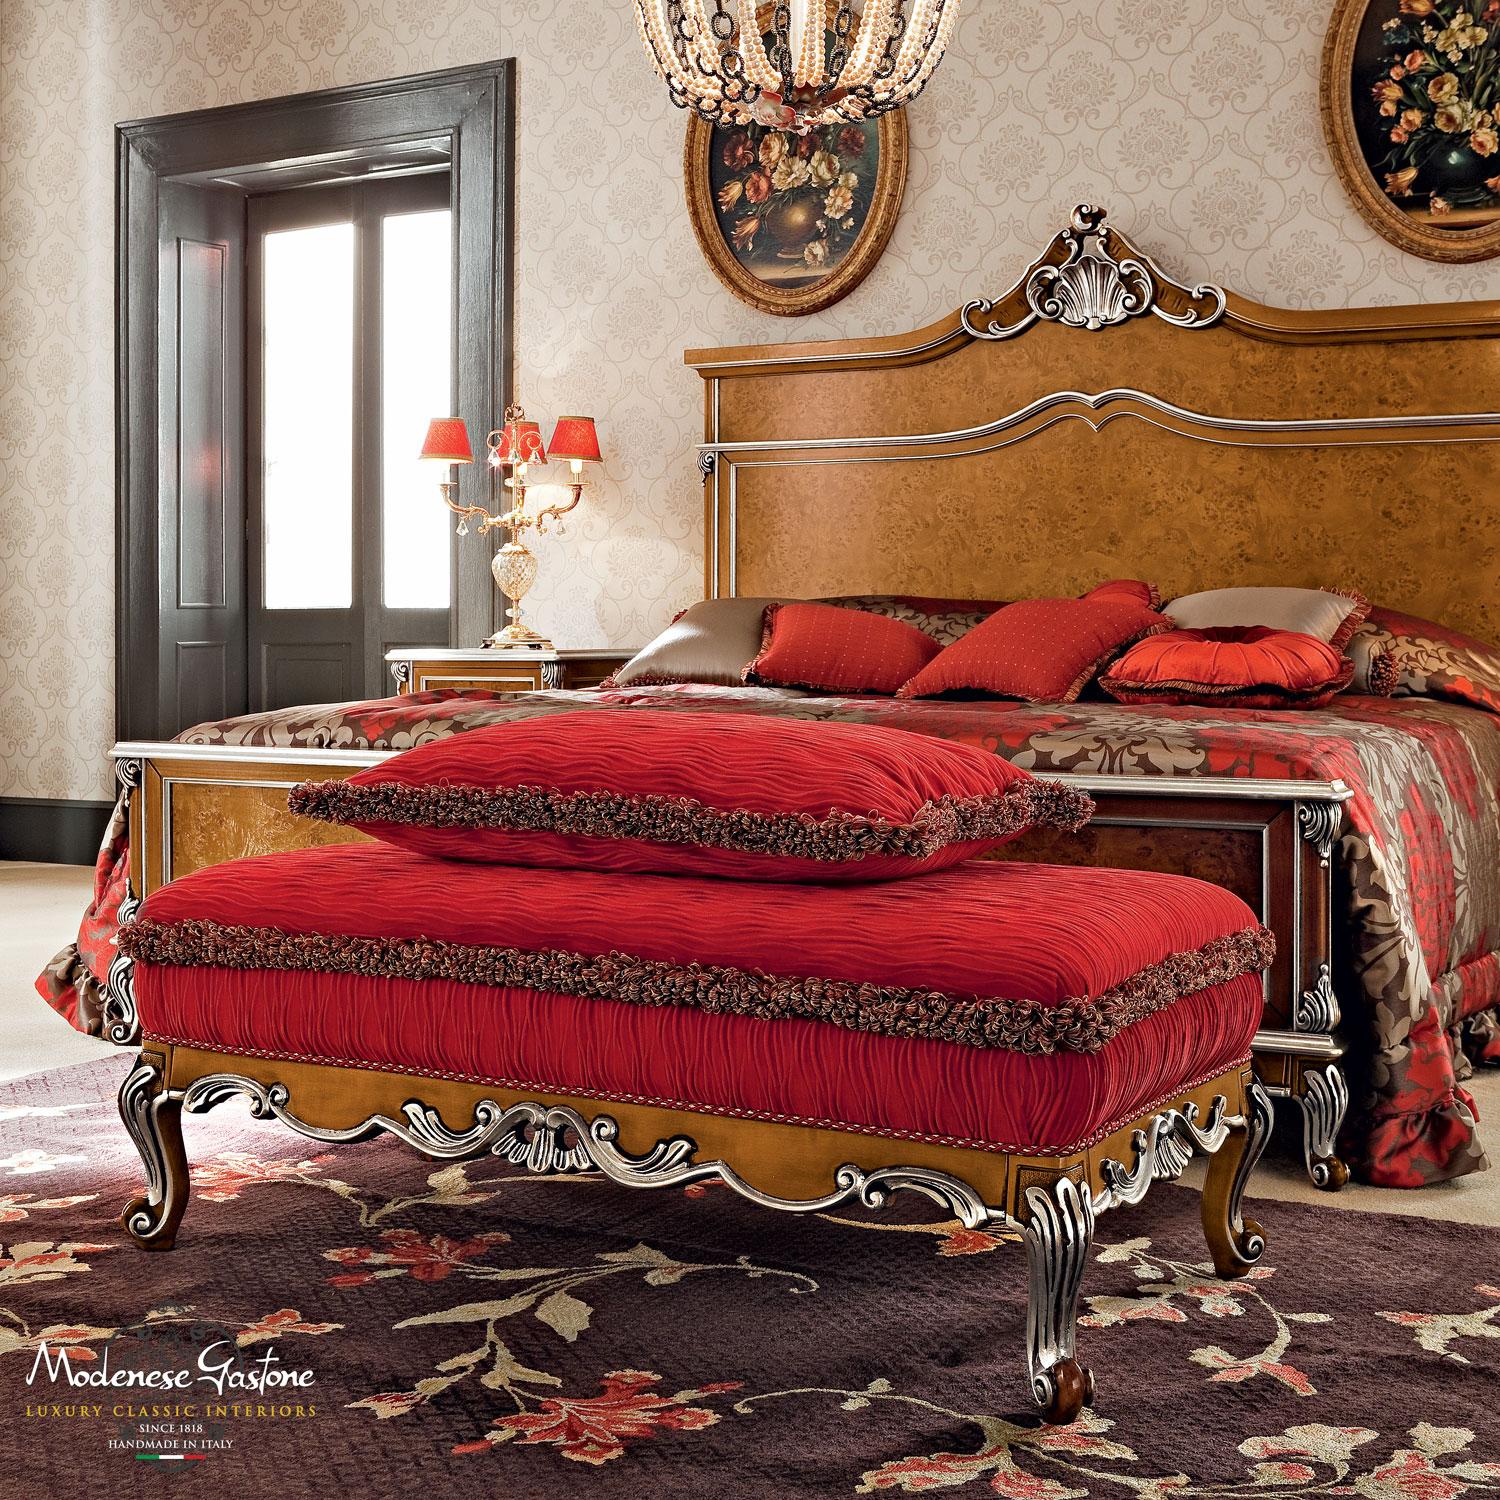 Doppelbett von Modenese Gastone Hersteller in Radica Holzoberflächen, ideal in faszinierenden Schlafzimmer mit gepaart Radica dekoriert Möbel. Das Kopfteilpaneel kann gepolstert werden und ist in verschiedenen Stoffen anpassbar. Matratze (W200,